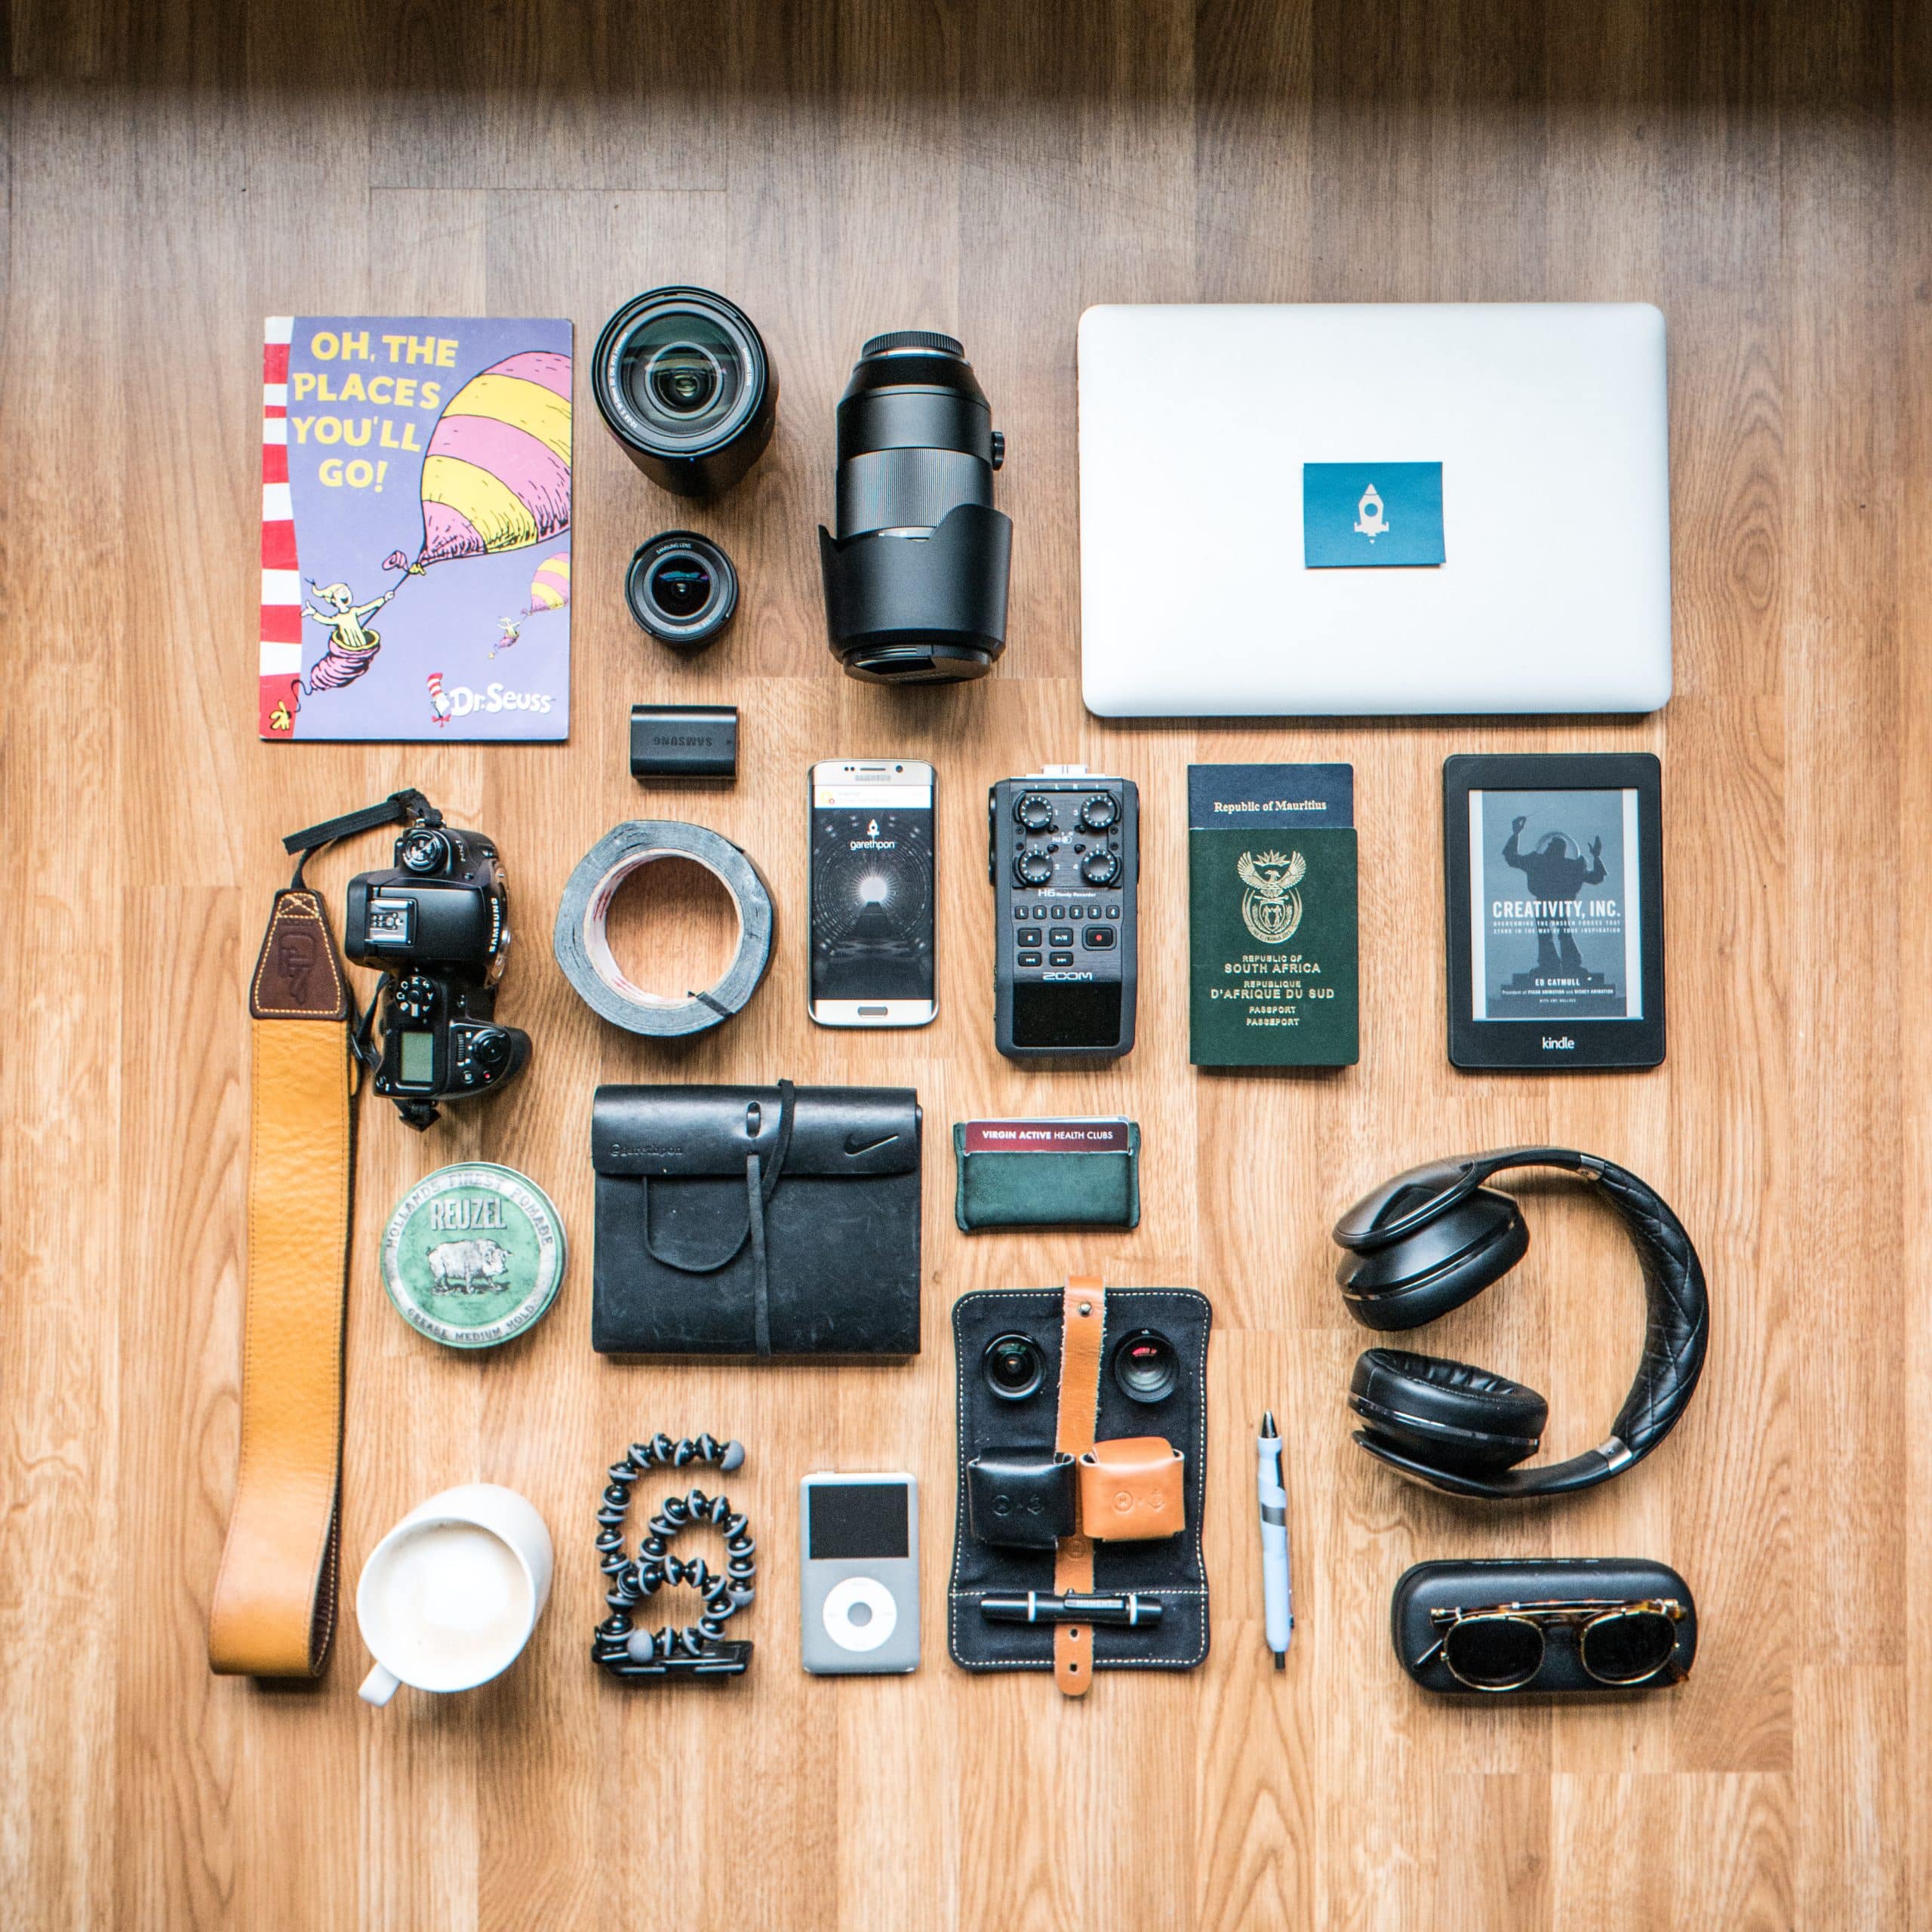 El kit de herramientas fotográficas de Gareth Pon: Vea lo que el fotógrafo insta-famoso tiene a mano